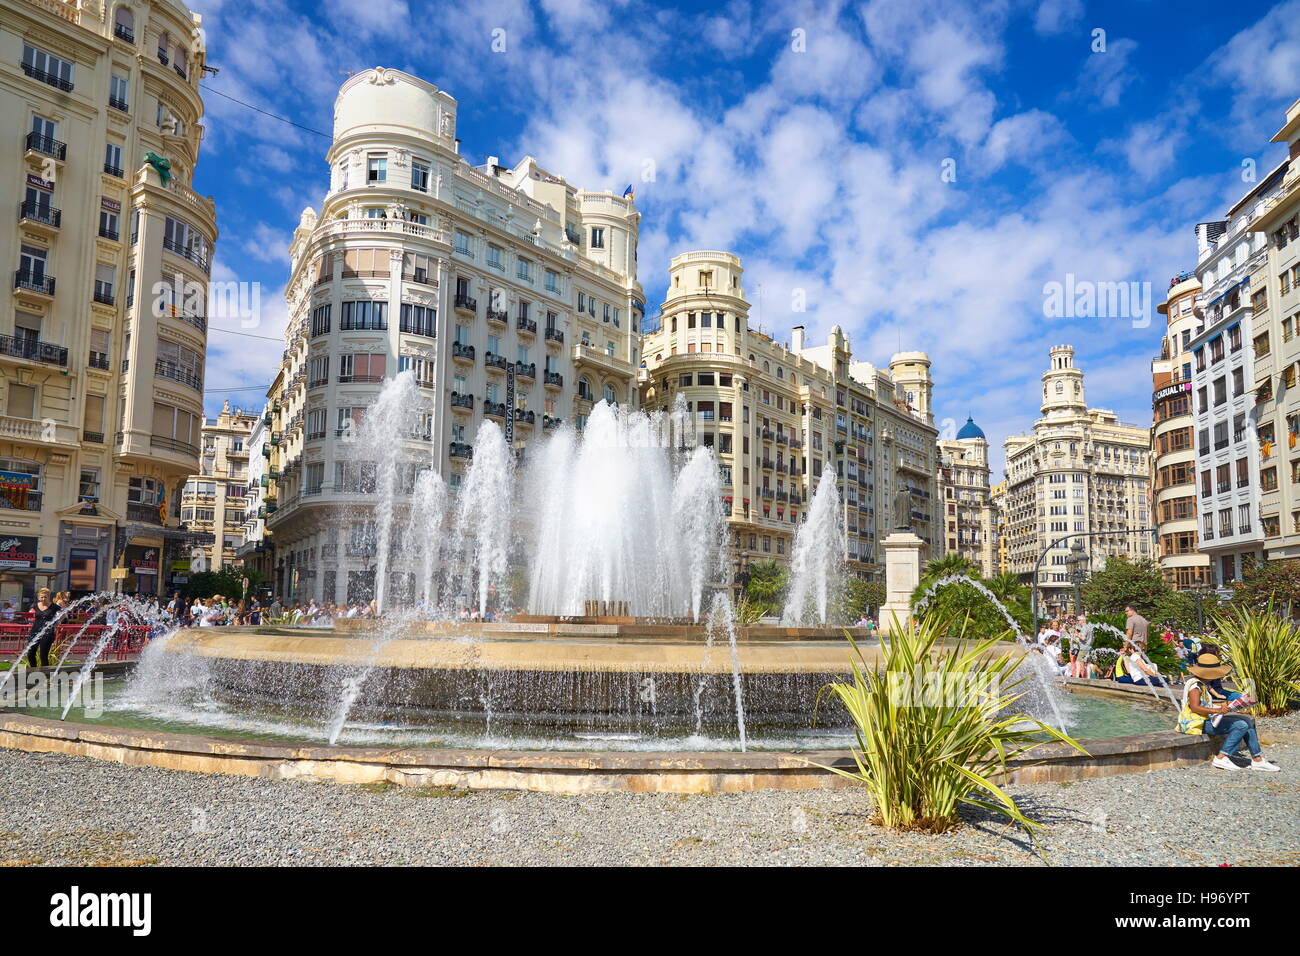 Spain - Fountain at Plaza del Ayuntamiento, Valencia Stock Photo